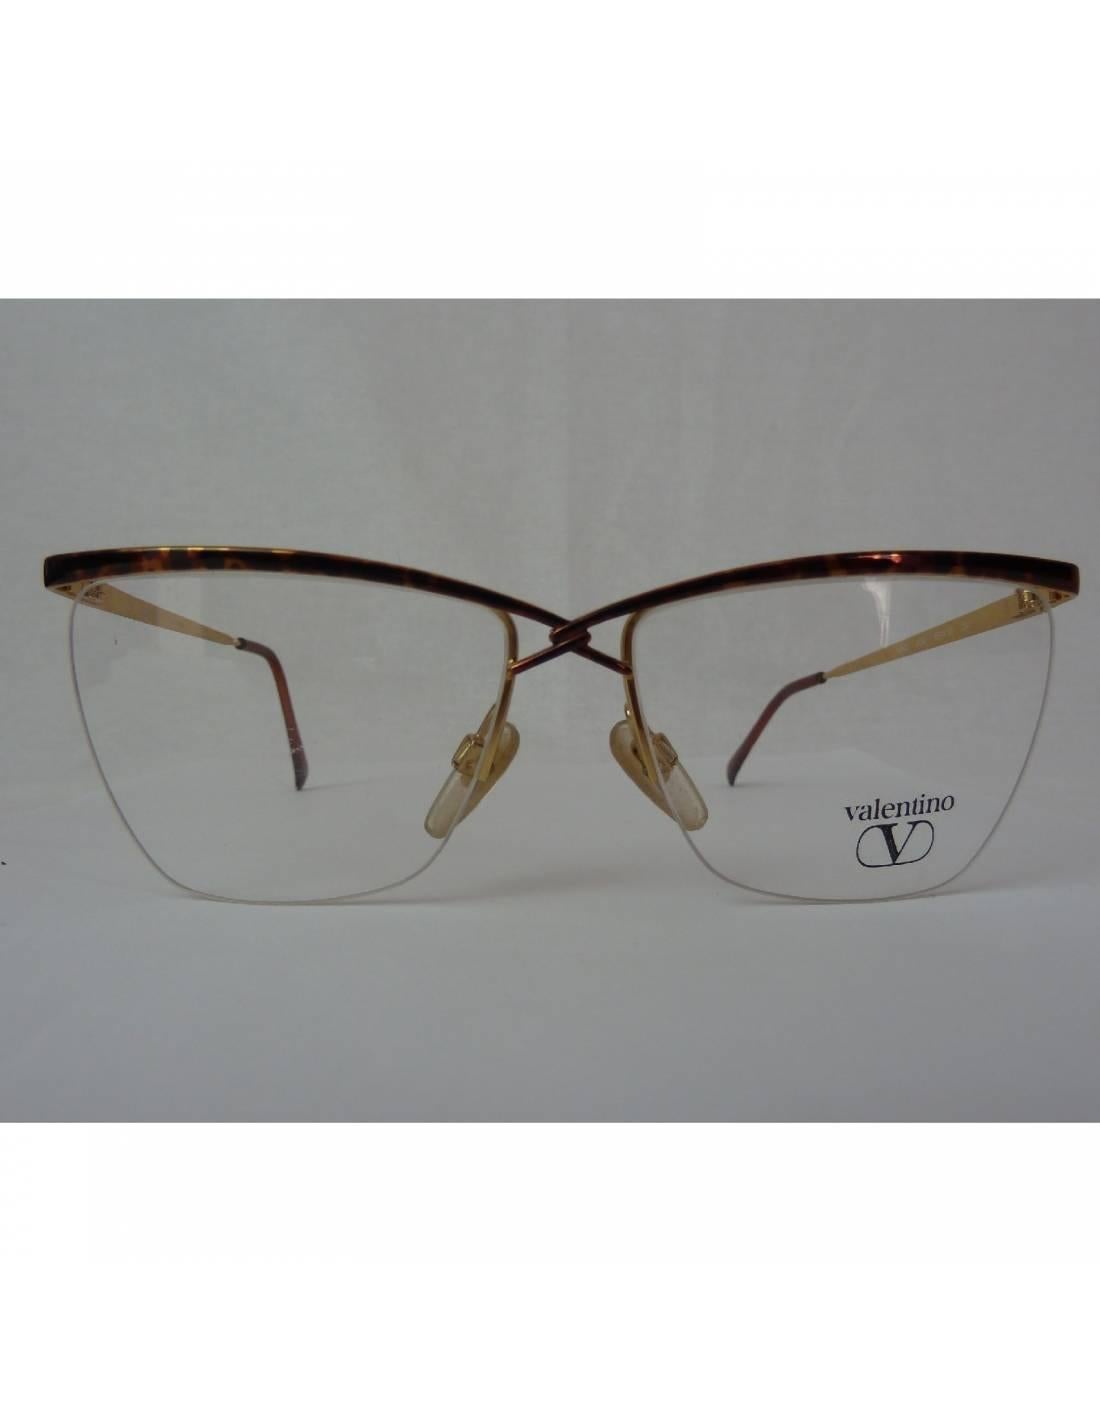 Valentino vintage eyeglasses for men, tortoise brown metal frame, 80s, made in Italy, new stock fund. Original case. Model V360.

Lenses: 55 mm
Bridge: 15 mm
Rod Length: 130 mm